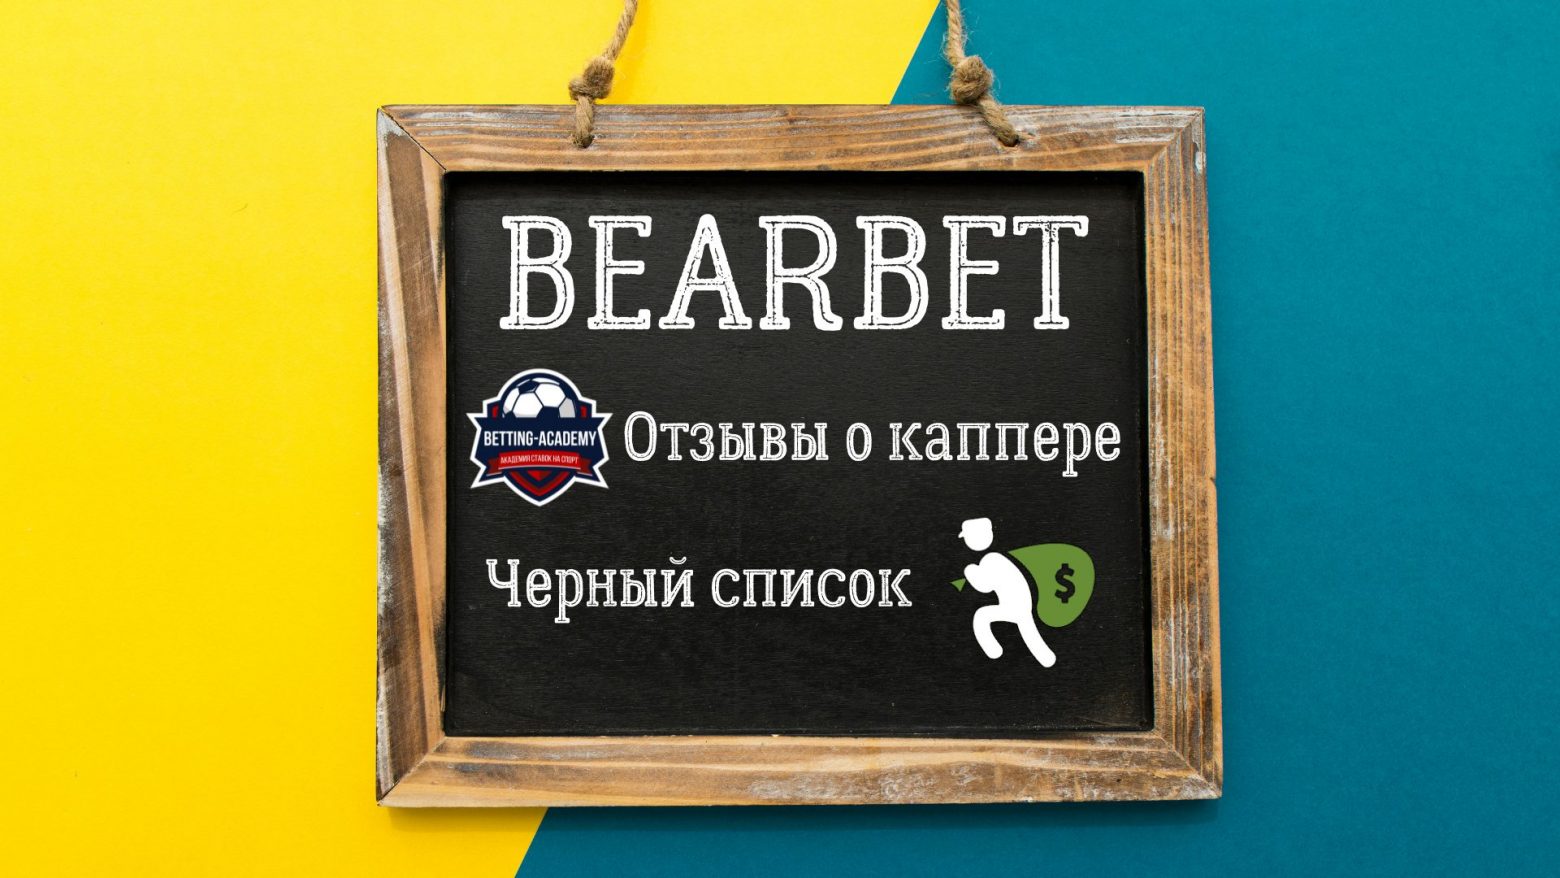 Игорь Петренко (BEARBET) - жалоба на каппера